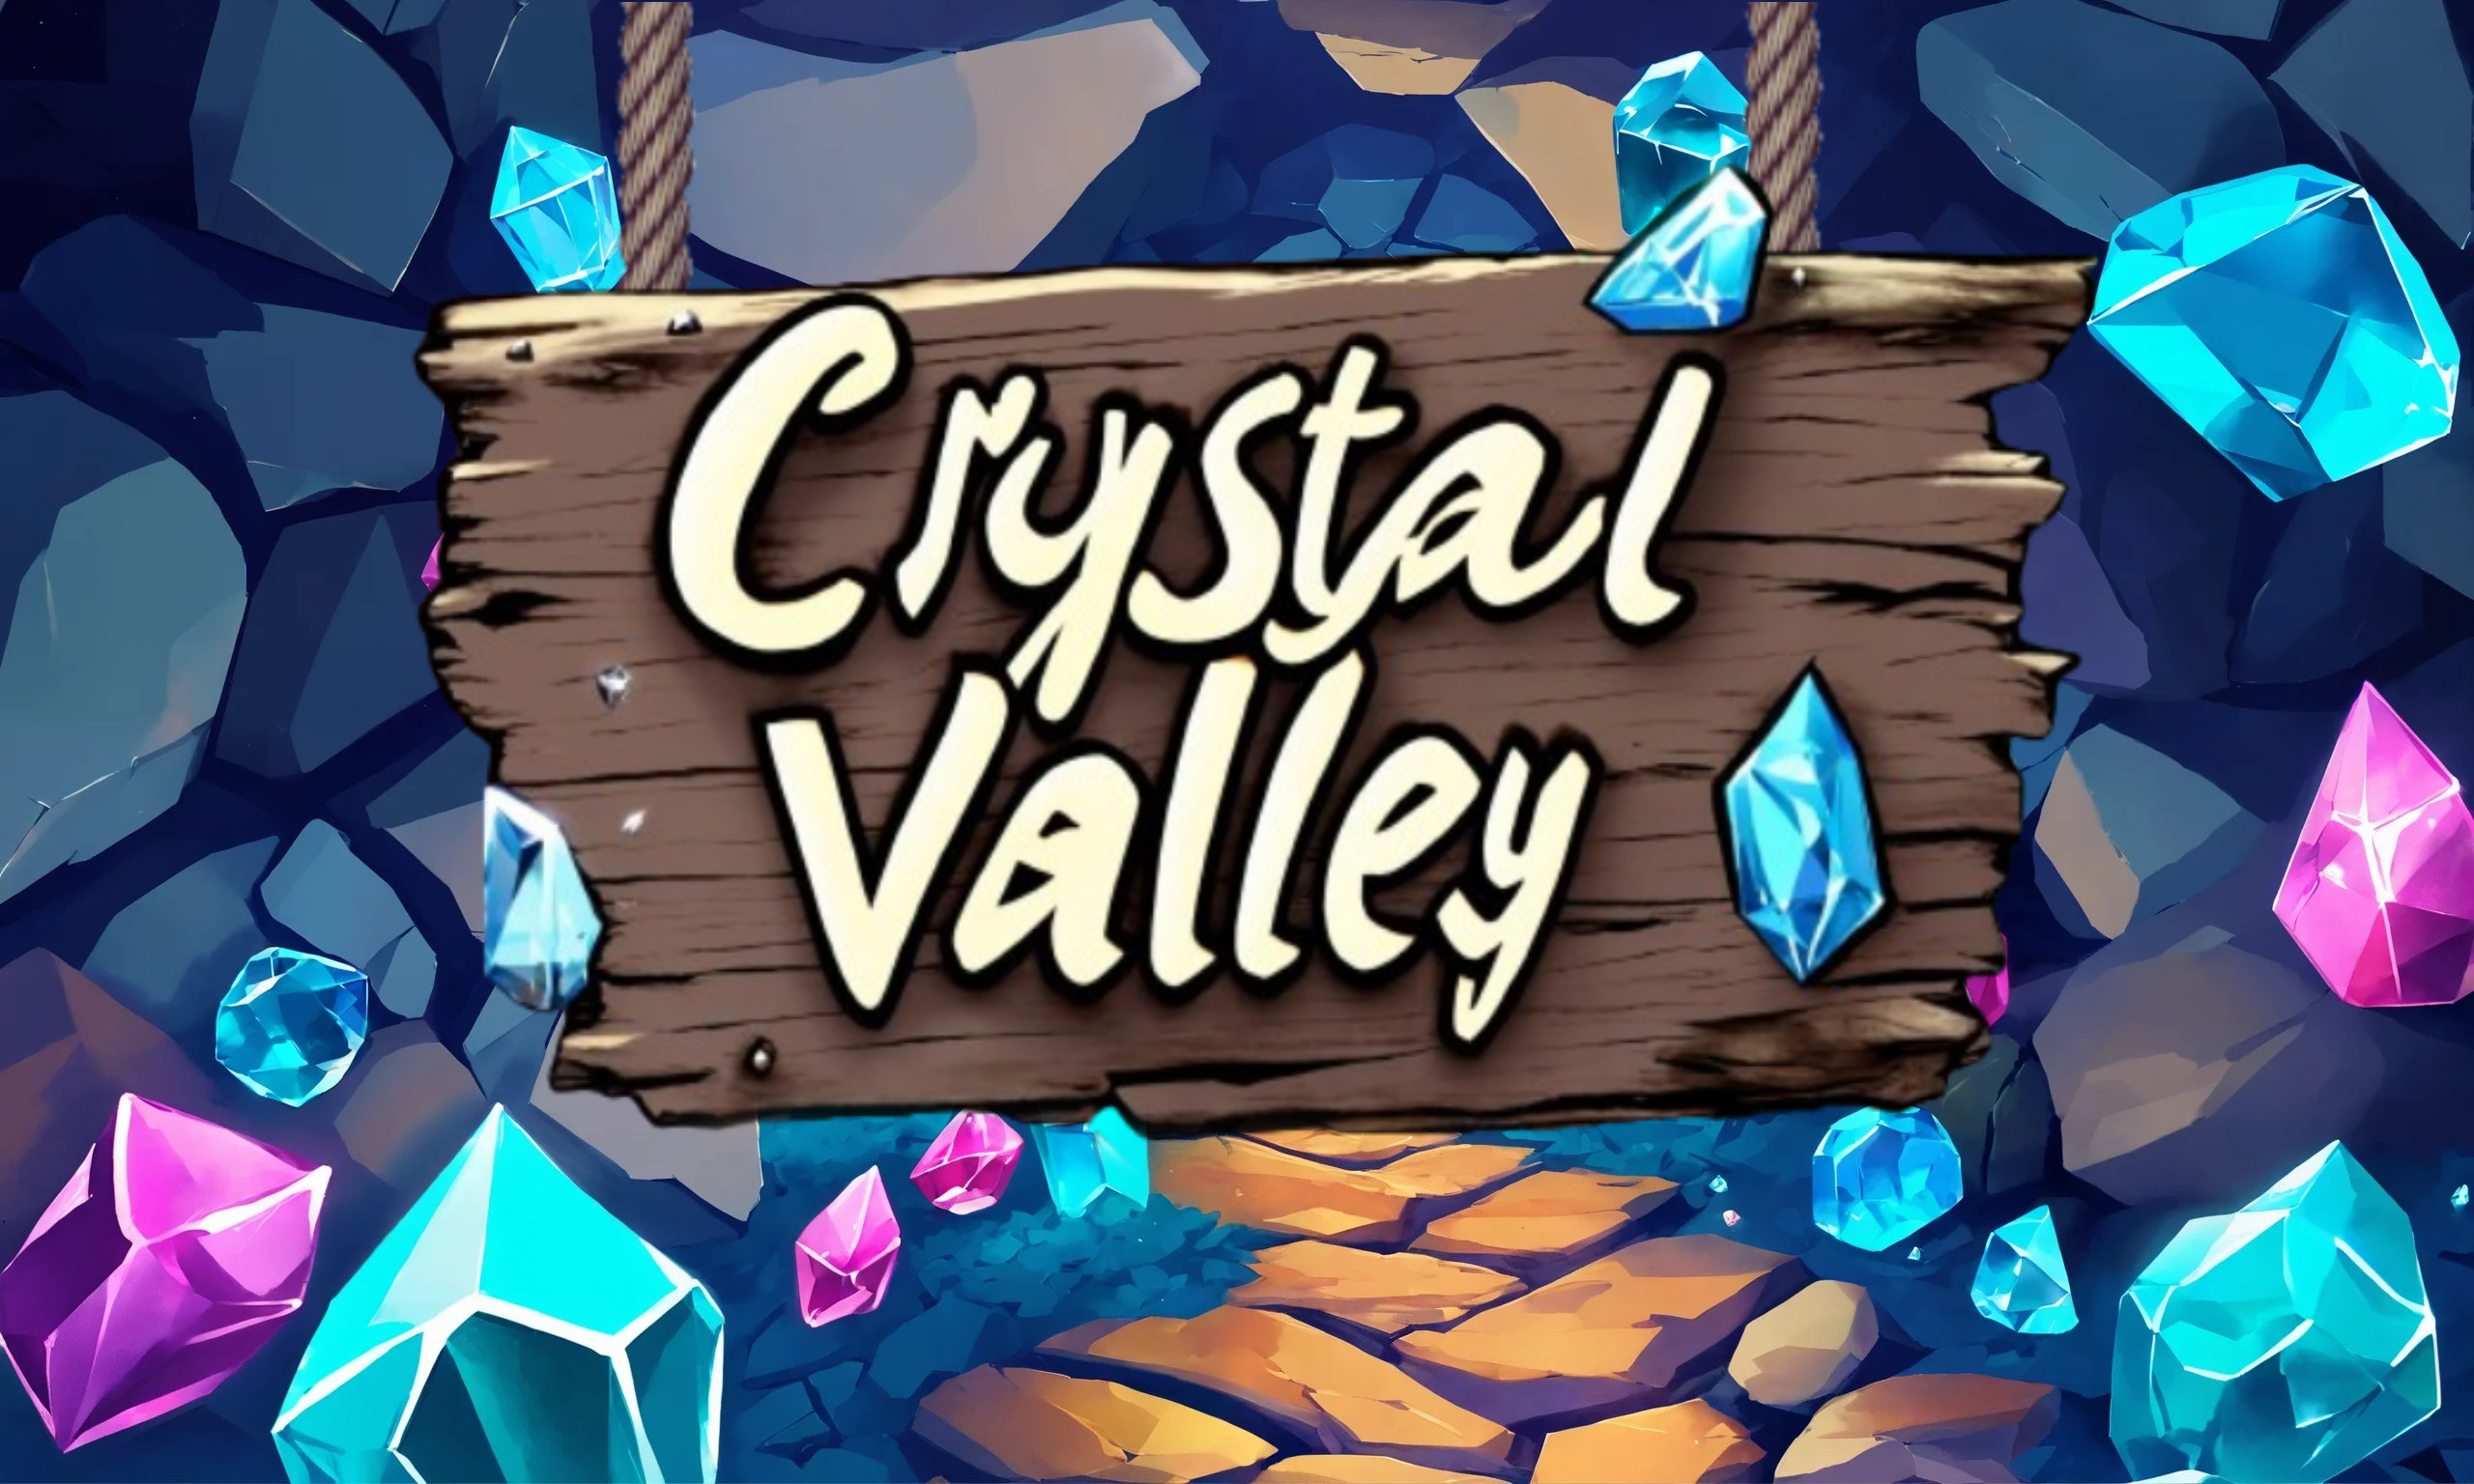 CrystalValley